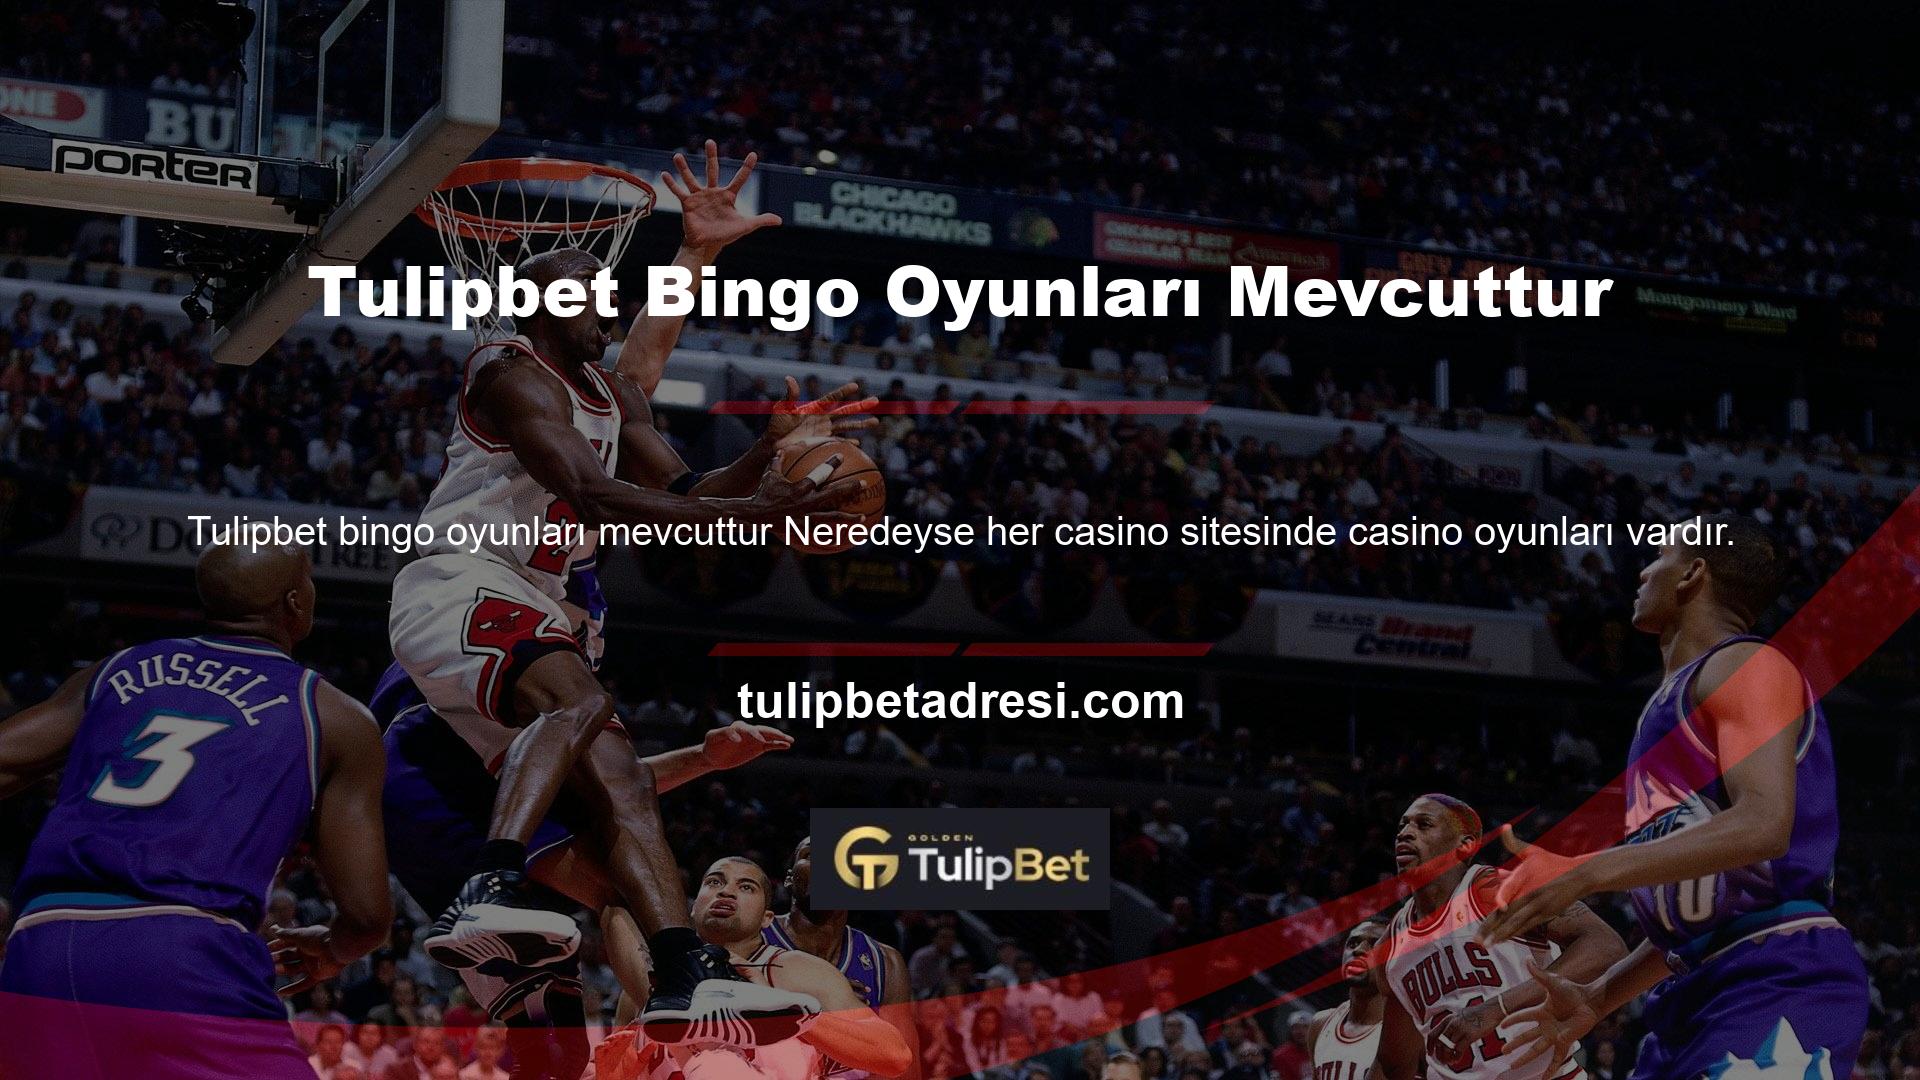 Üstelik bingo, çoğu web sitesinde kolayca bulunabilen casino oyunlarından biridir